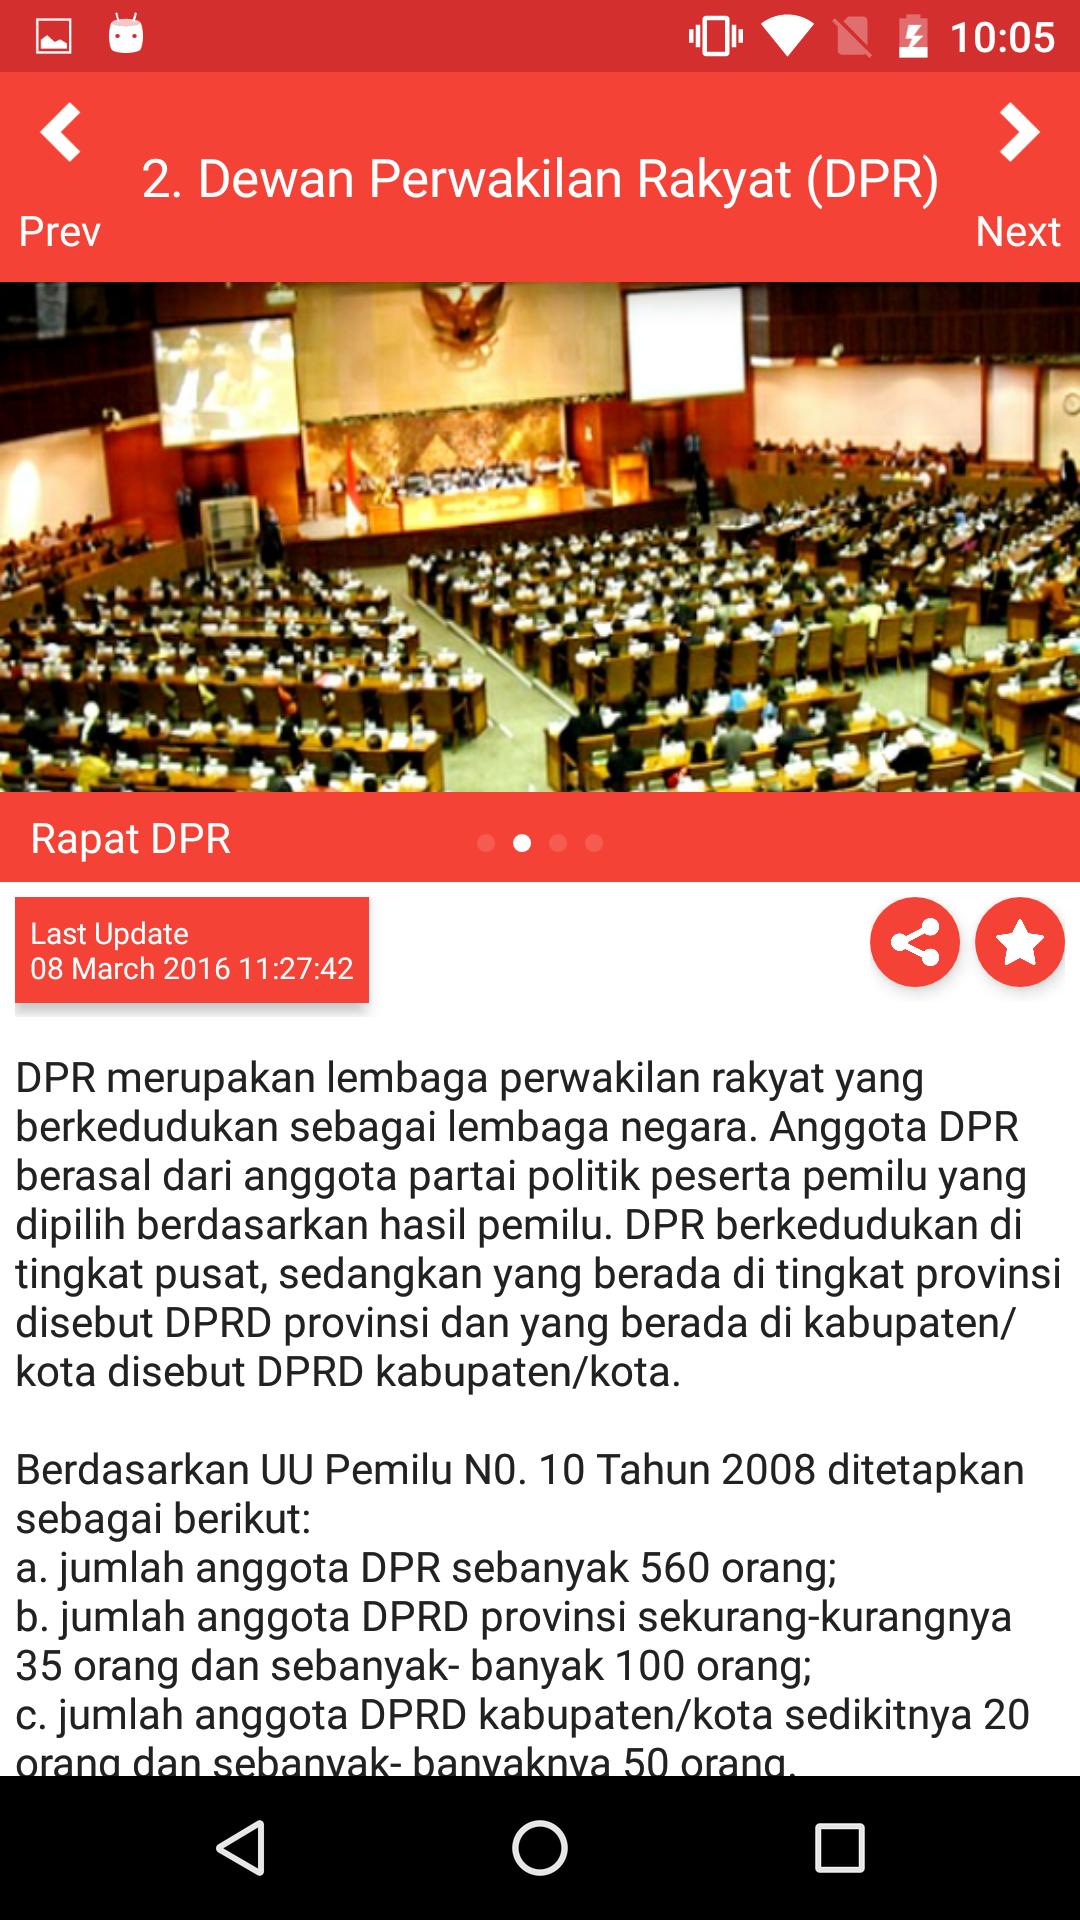 Dpr merupakan lembaga perwakilan rakyat yang berkedudukan sebagai lembaga